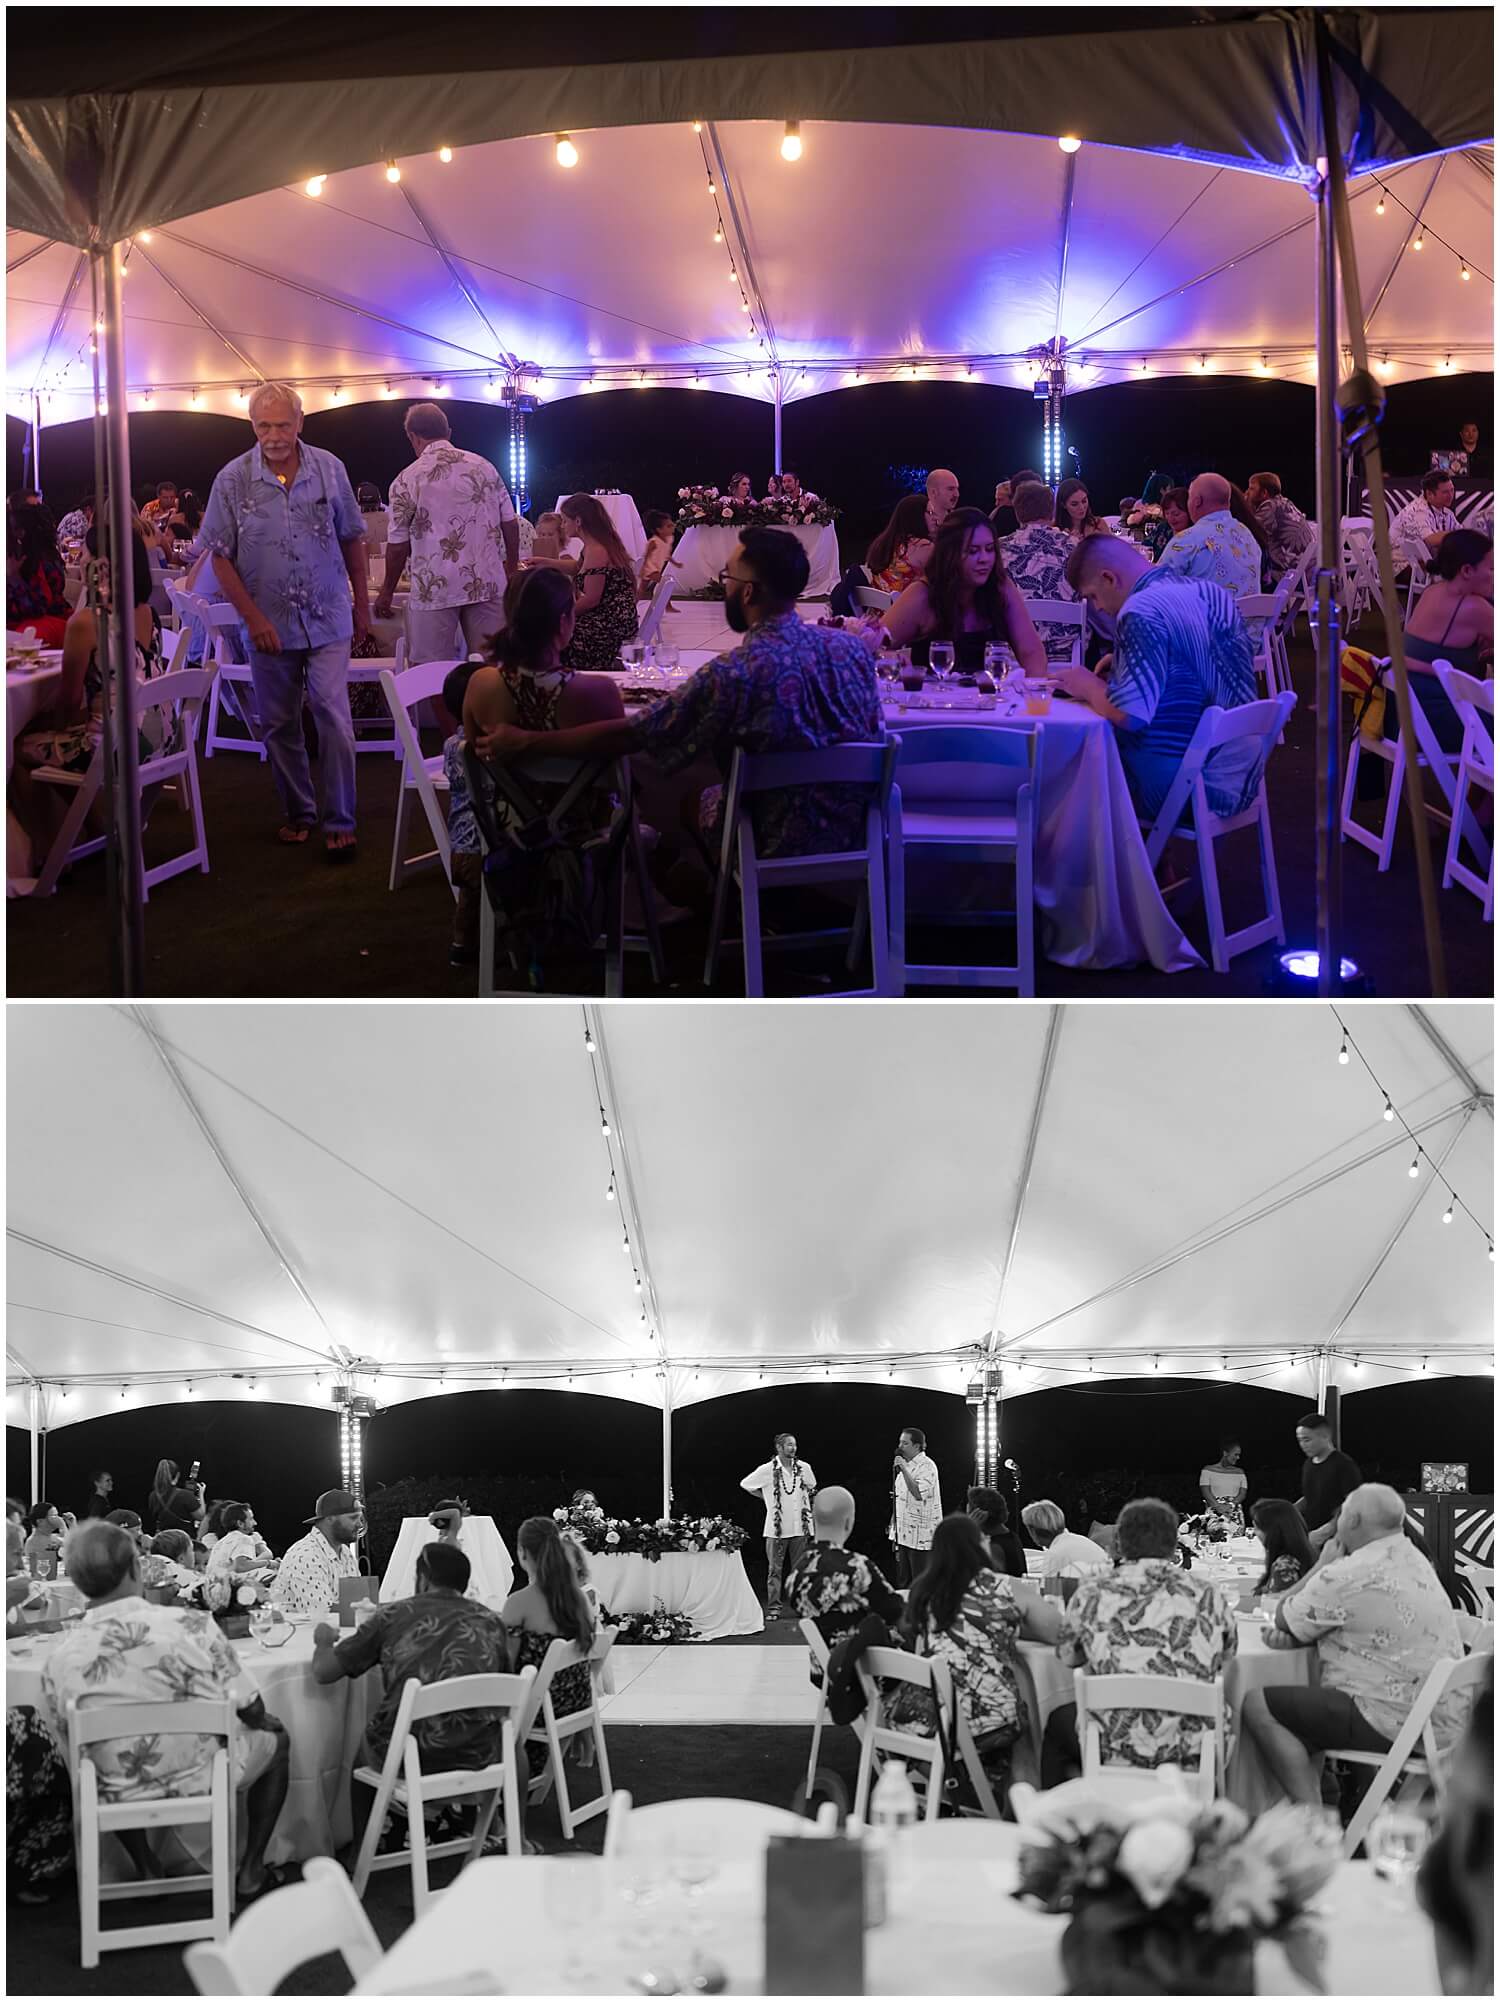 White tent and string lights at wedding reception at Moli’i gardens at Kualoa ranch